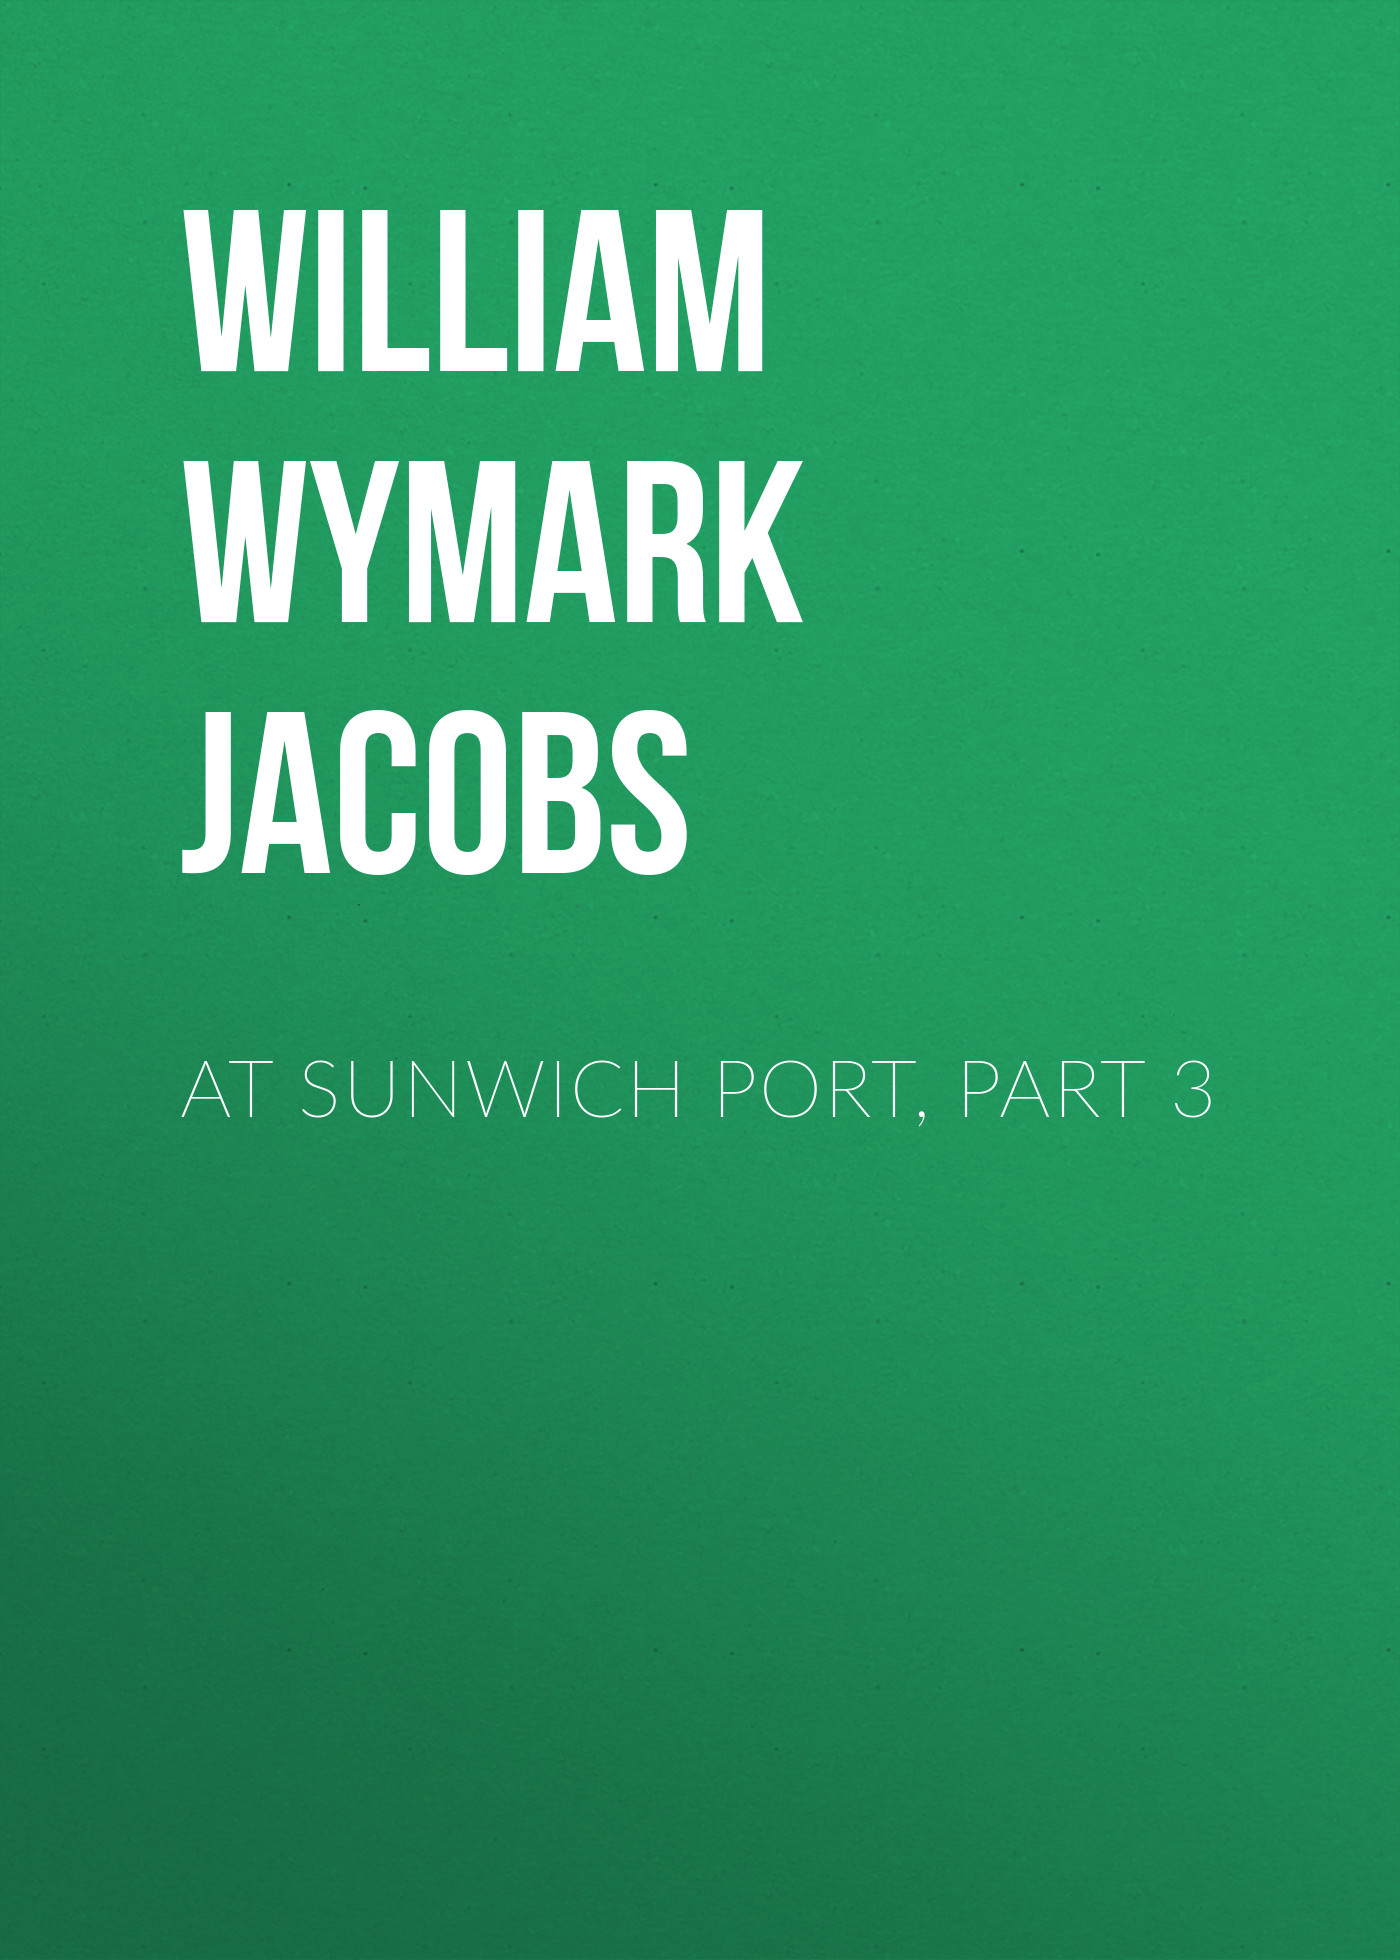 Книга At Sunwich Port, Part 3 из серии , созданная William Wymark Jacobs, может относится к жанру Зарубежная классика, Зарубежная старинная литература. Стоимость электронной книги At Sunwich Port, Part 3 с идентификатором 34843966 составляет 0 руб.